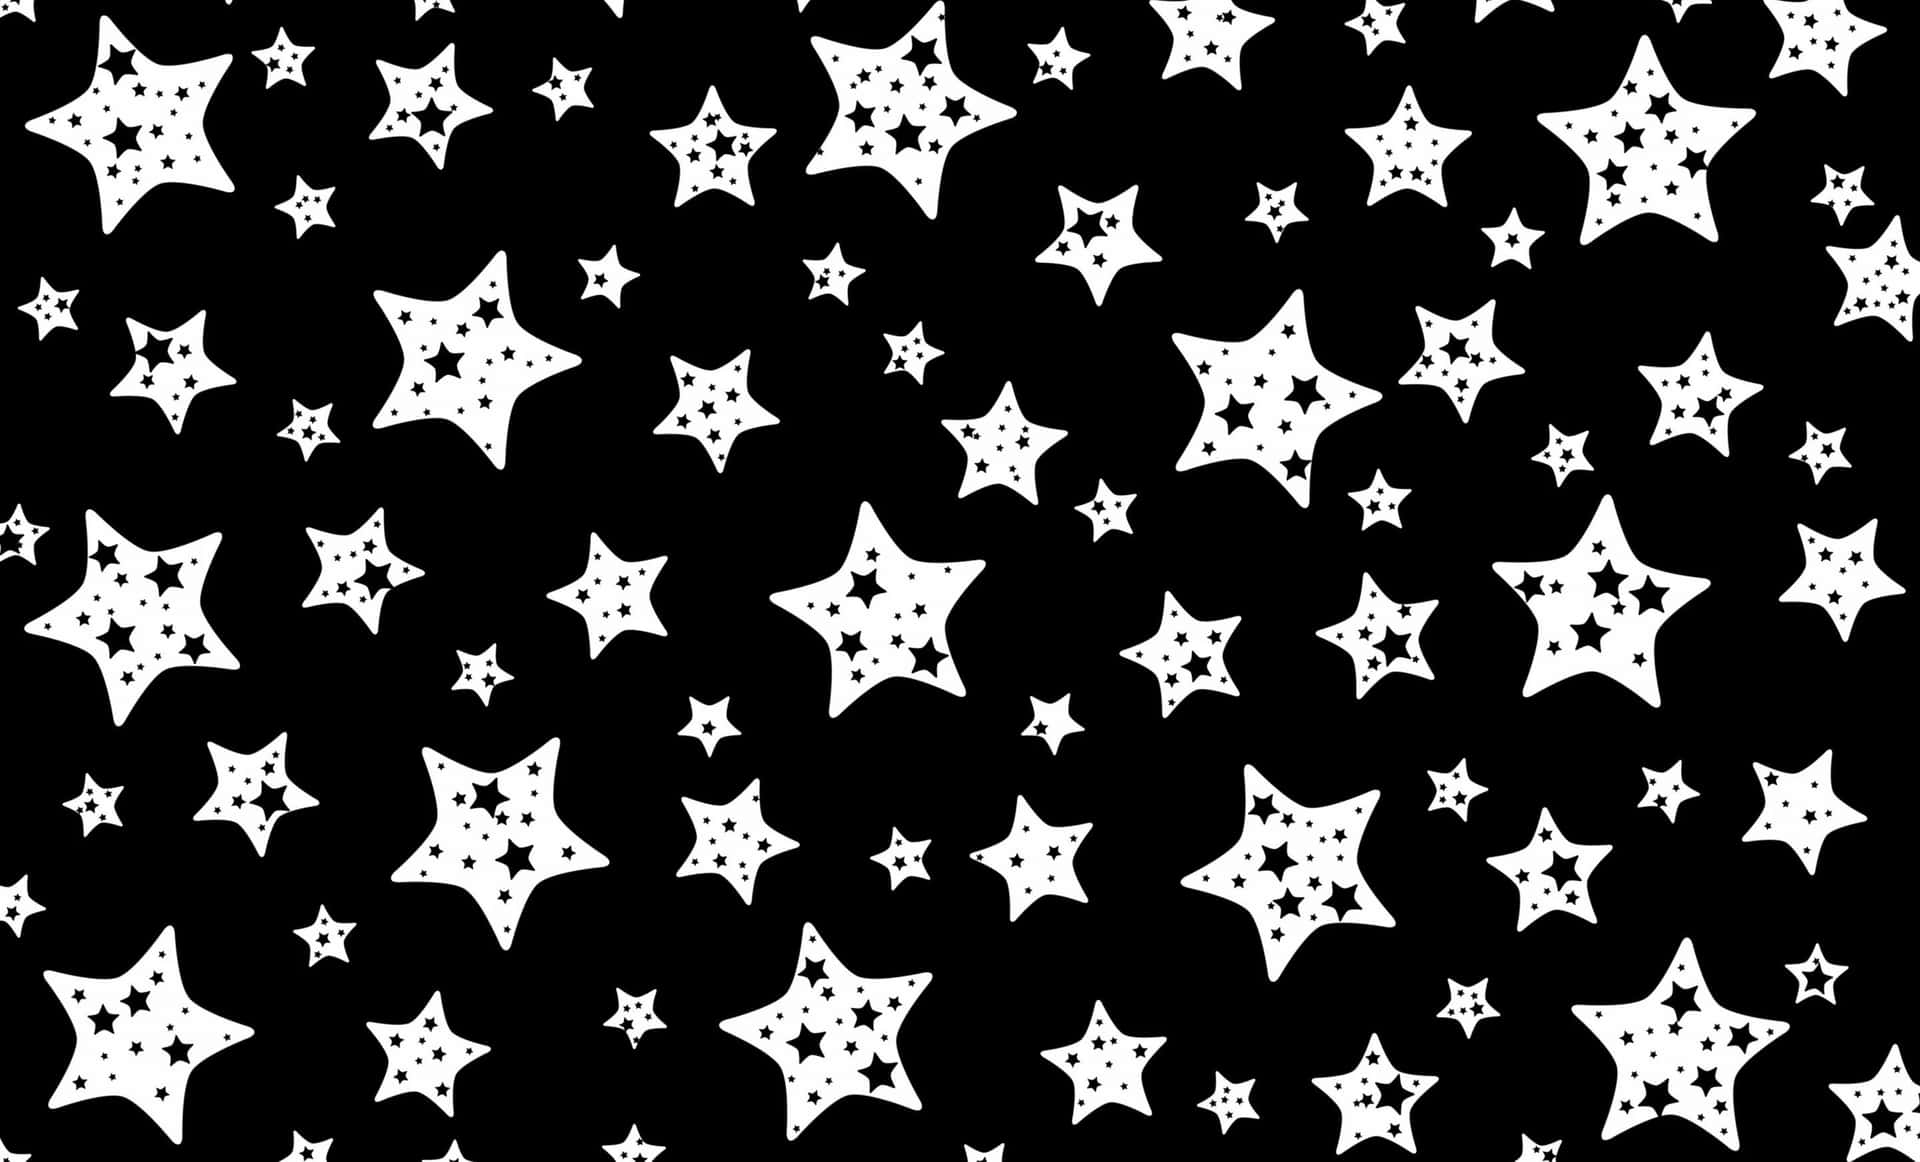 Fondode Pantalla De Estrellas En Blanco Y Negro. Fondo de pantalla